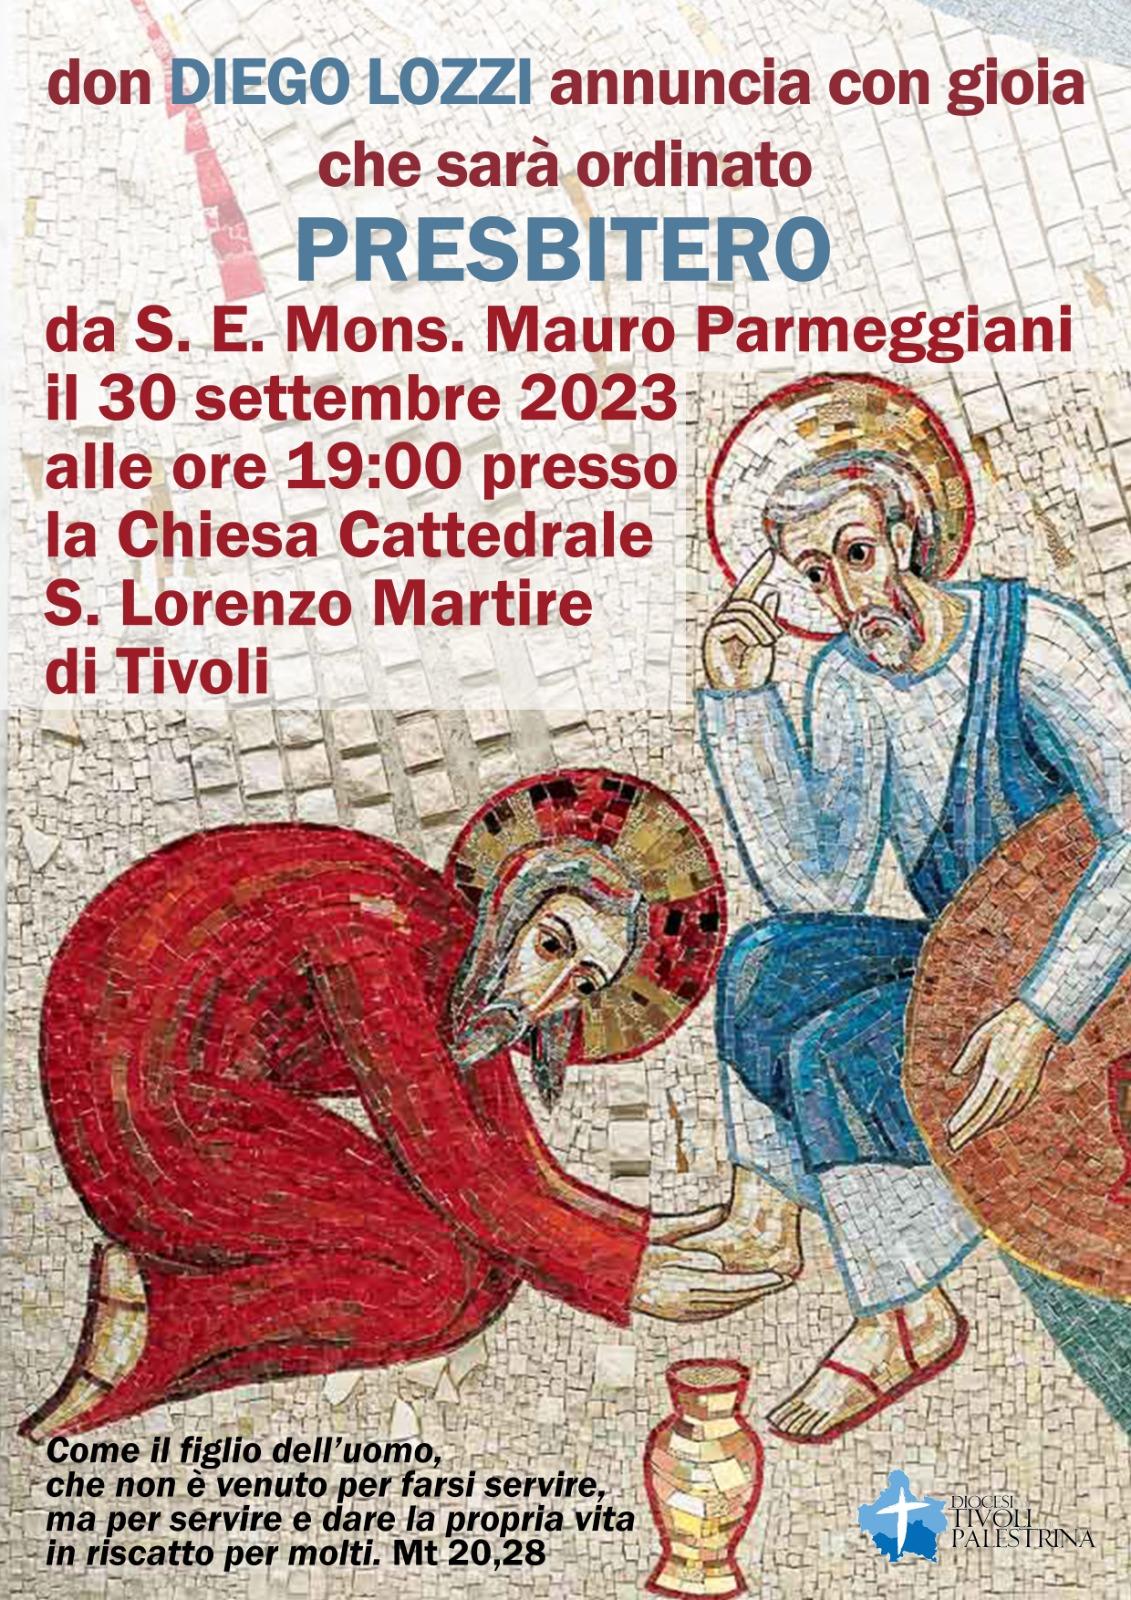 Ordinazione presbiterale in Duomo sabato 30 settembre 2023